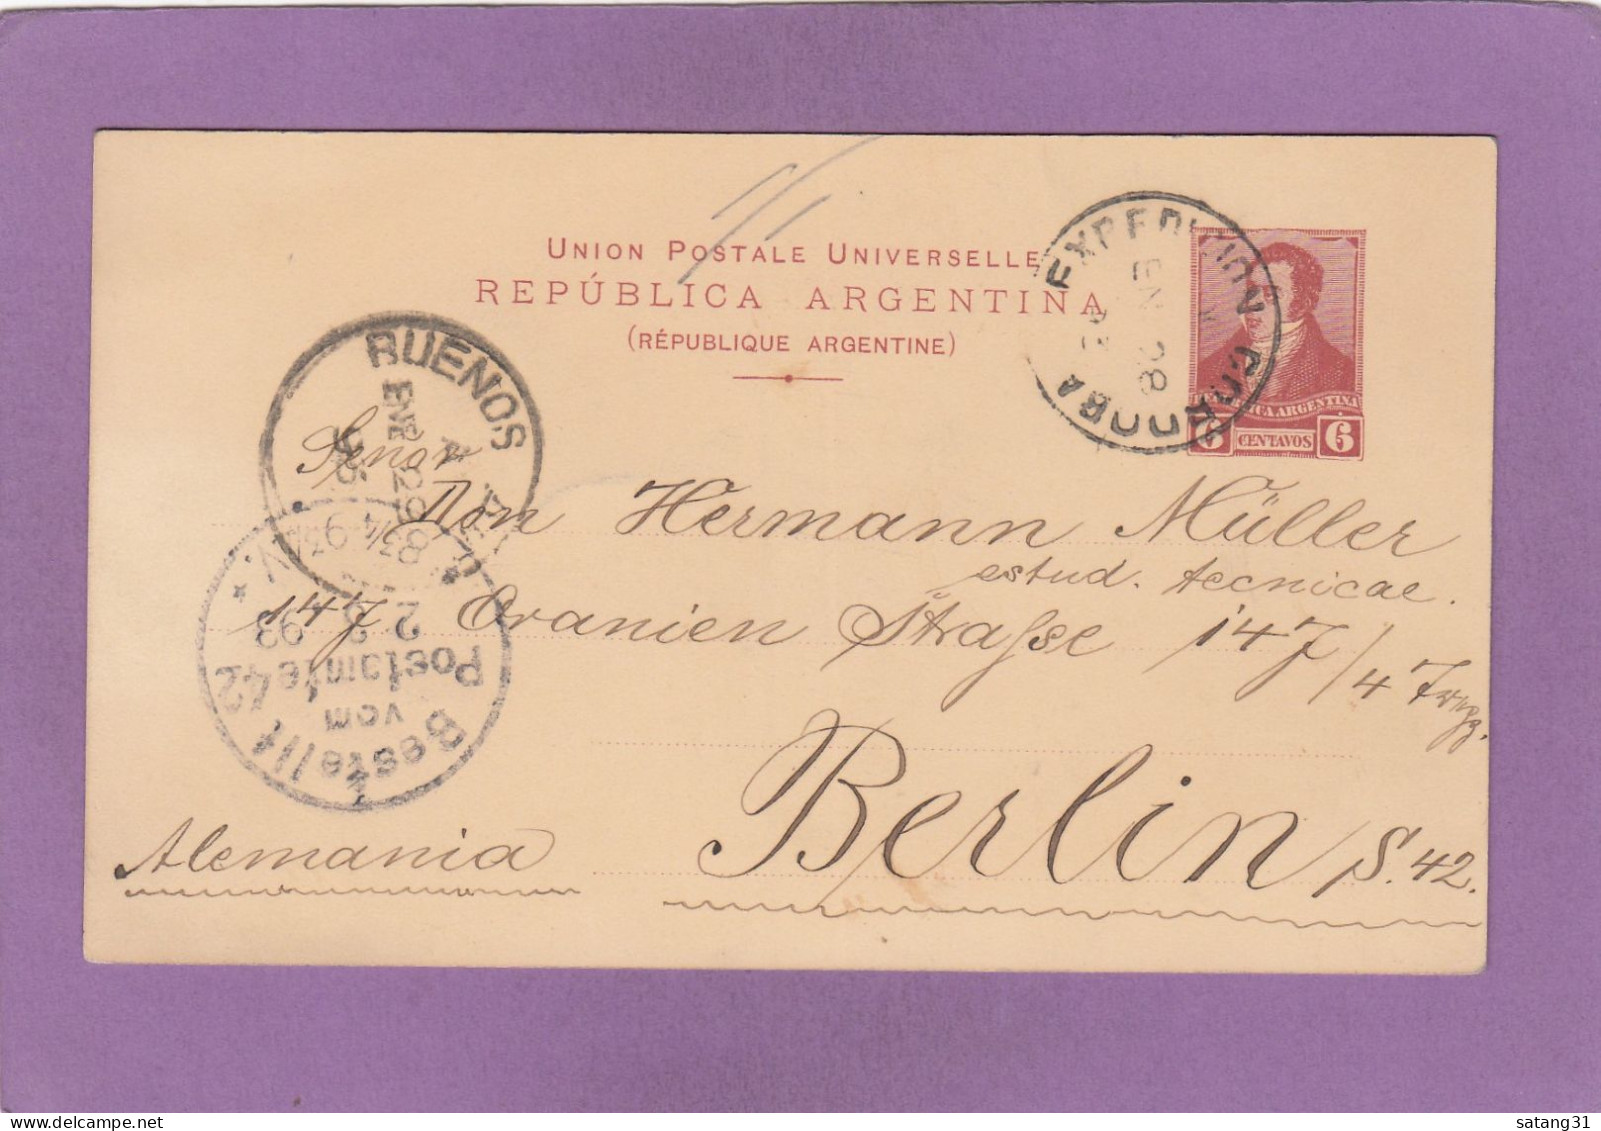 ENTIER POSTAL DE CORDOBA POUR BERLIN,VIA BUENOS AIRES,1893. - Ganzsachen